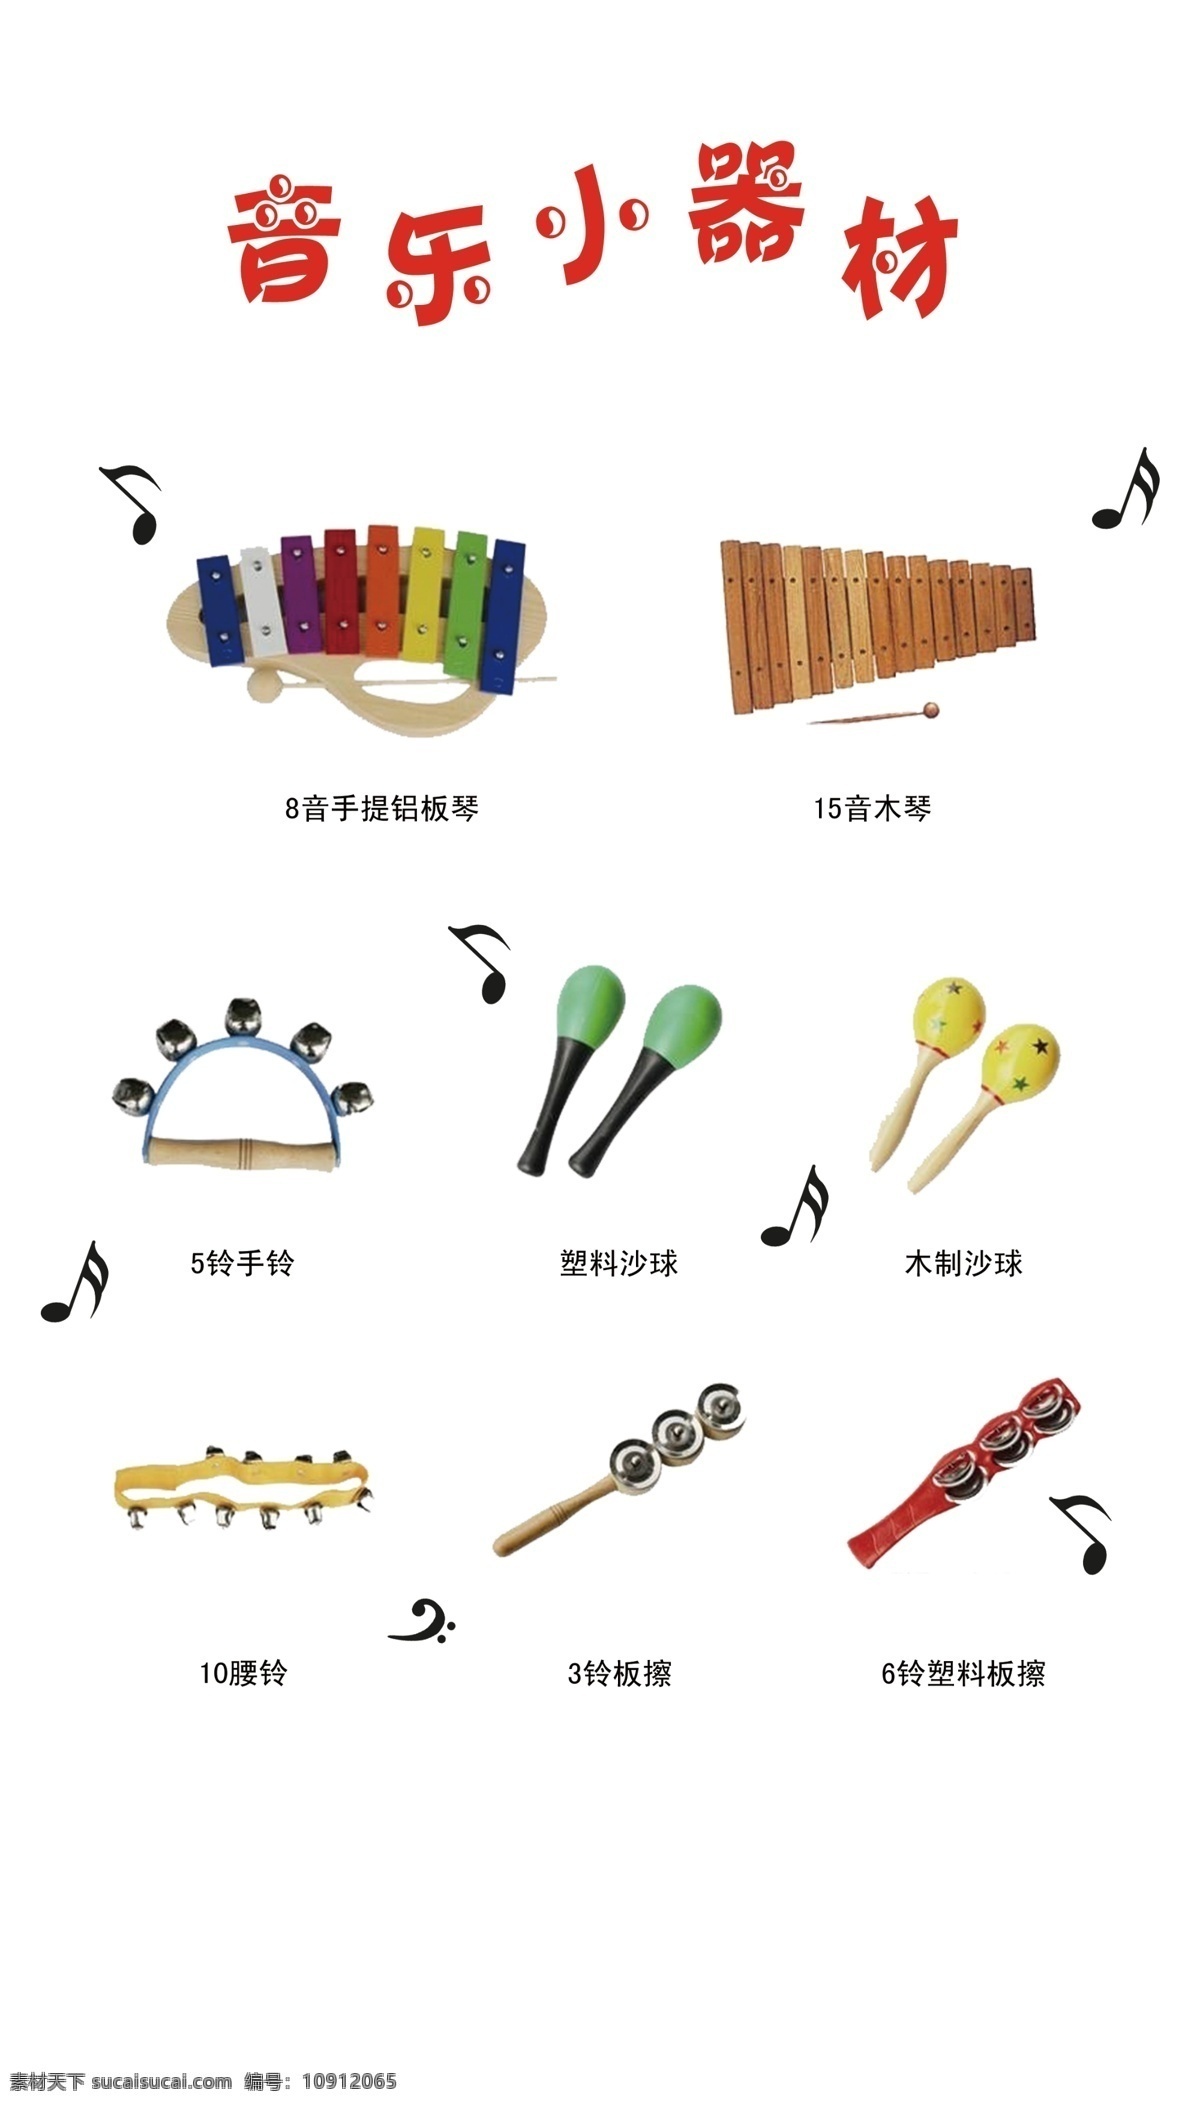 学校 音乐器材 装饰 音乐装饰 音乐器材装饰 学校墙面装饰 音乐教室装饰 小器材 分层